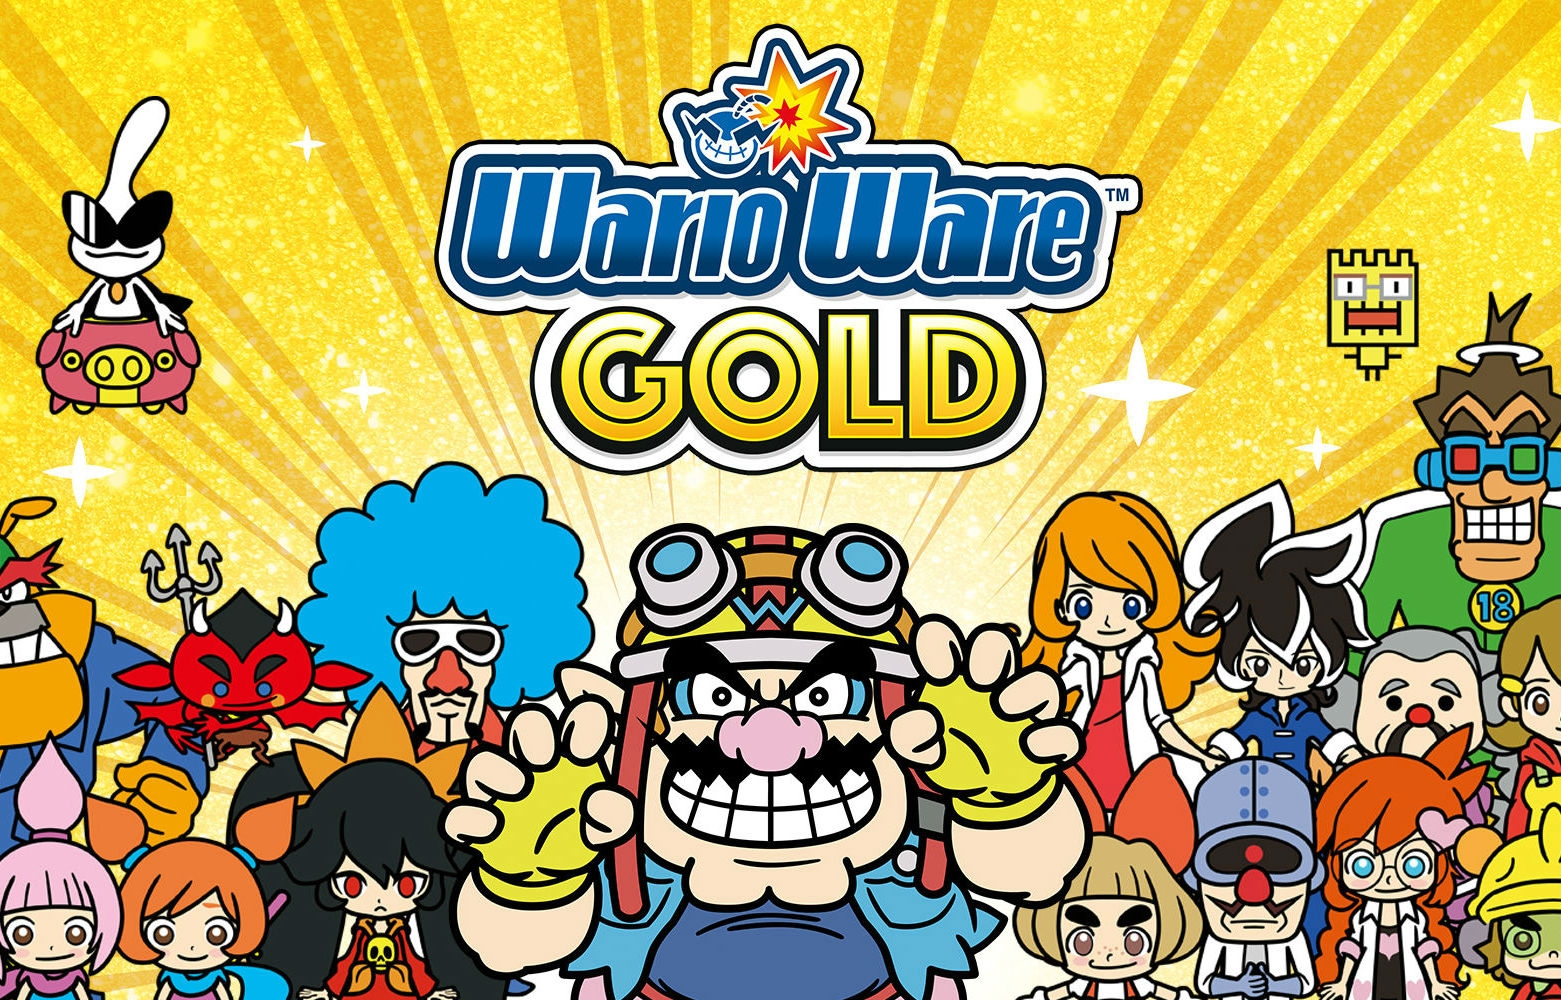 warioware gold cia mediafire